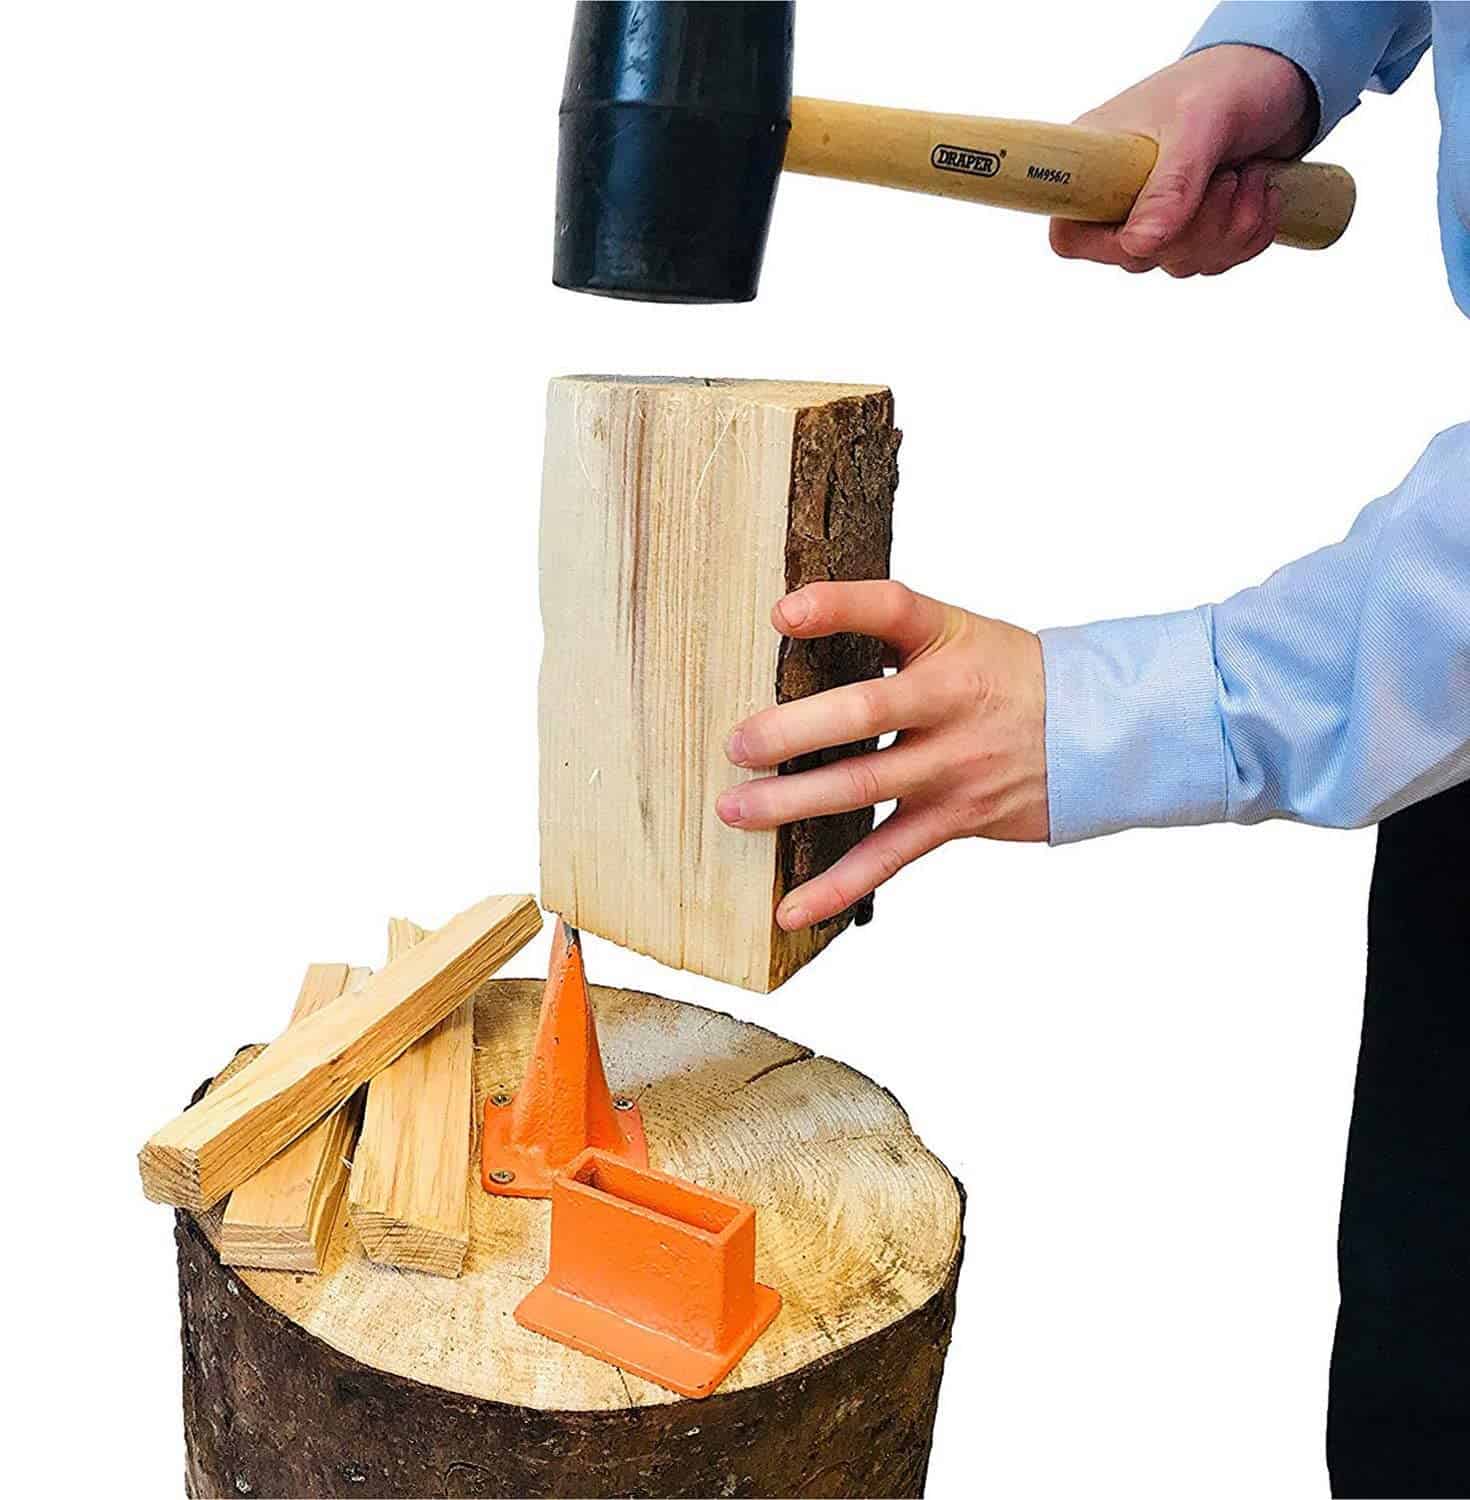 Best simple budget kindling splitter- SPEED FORCE Wood Splitter in use